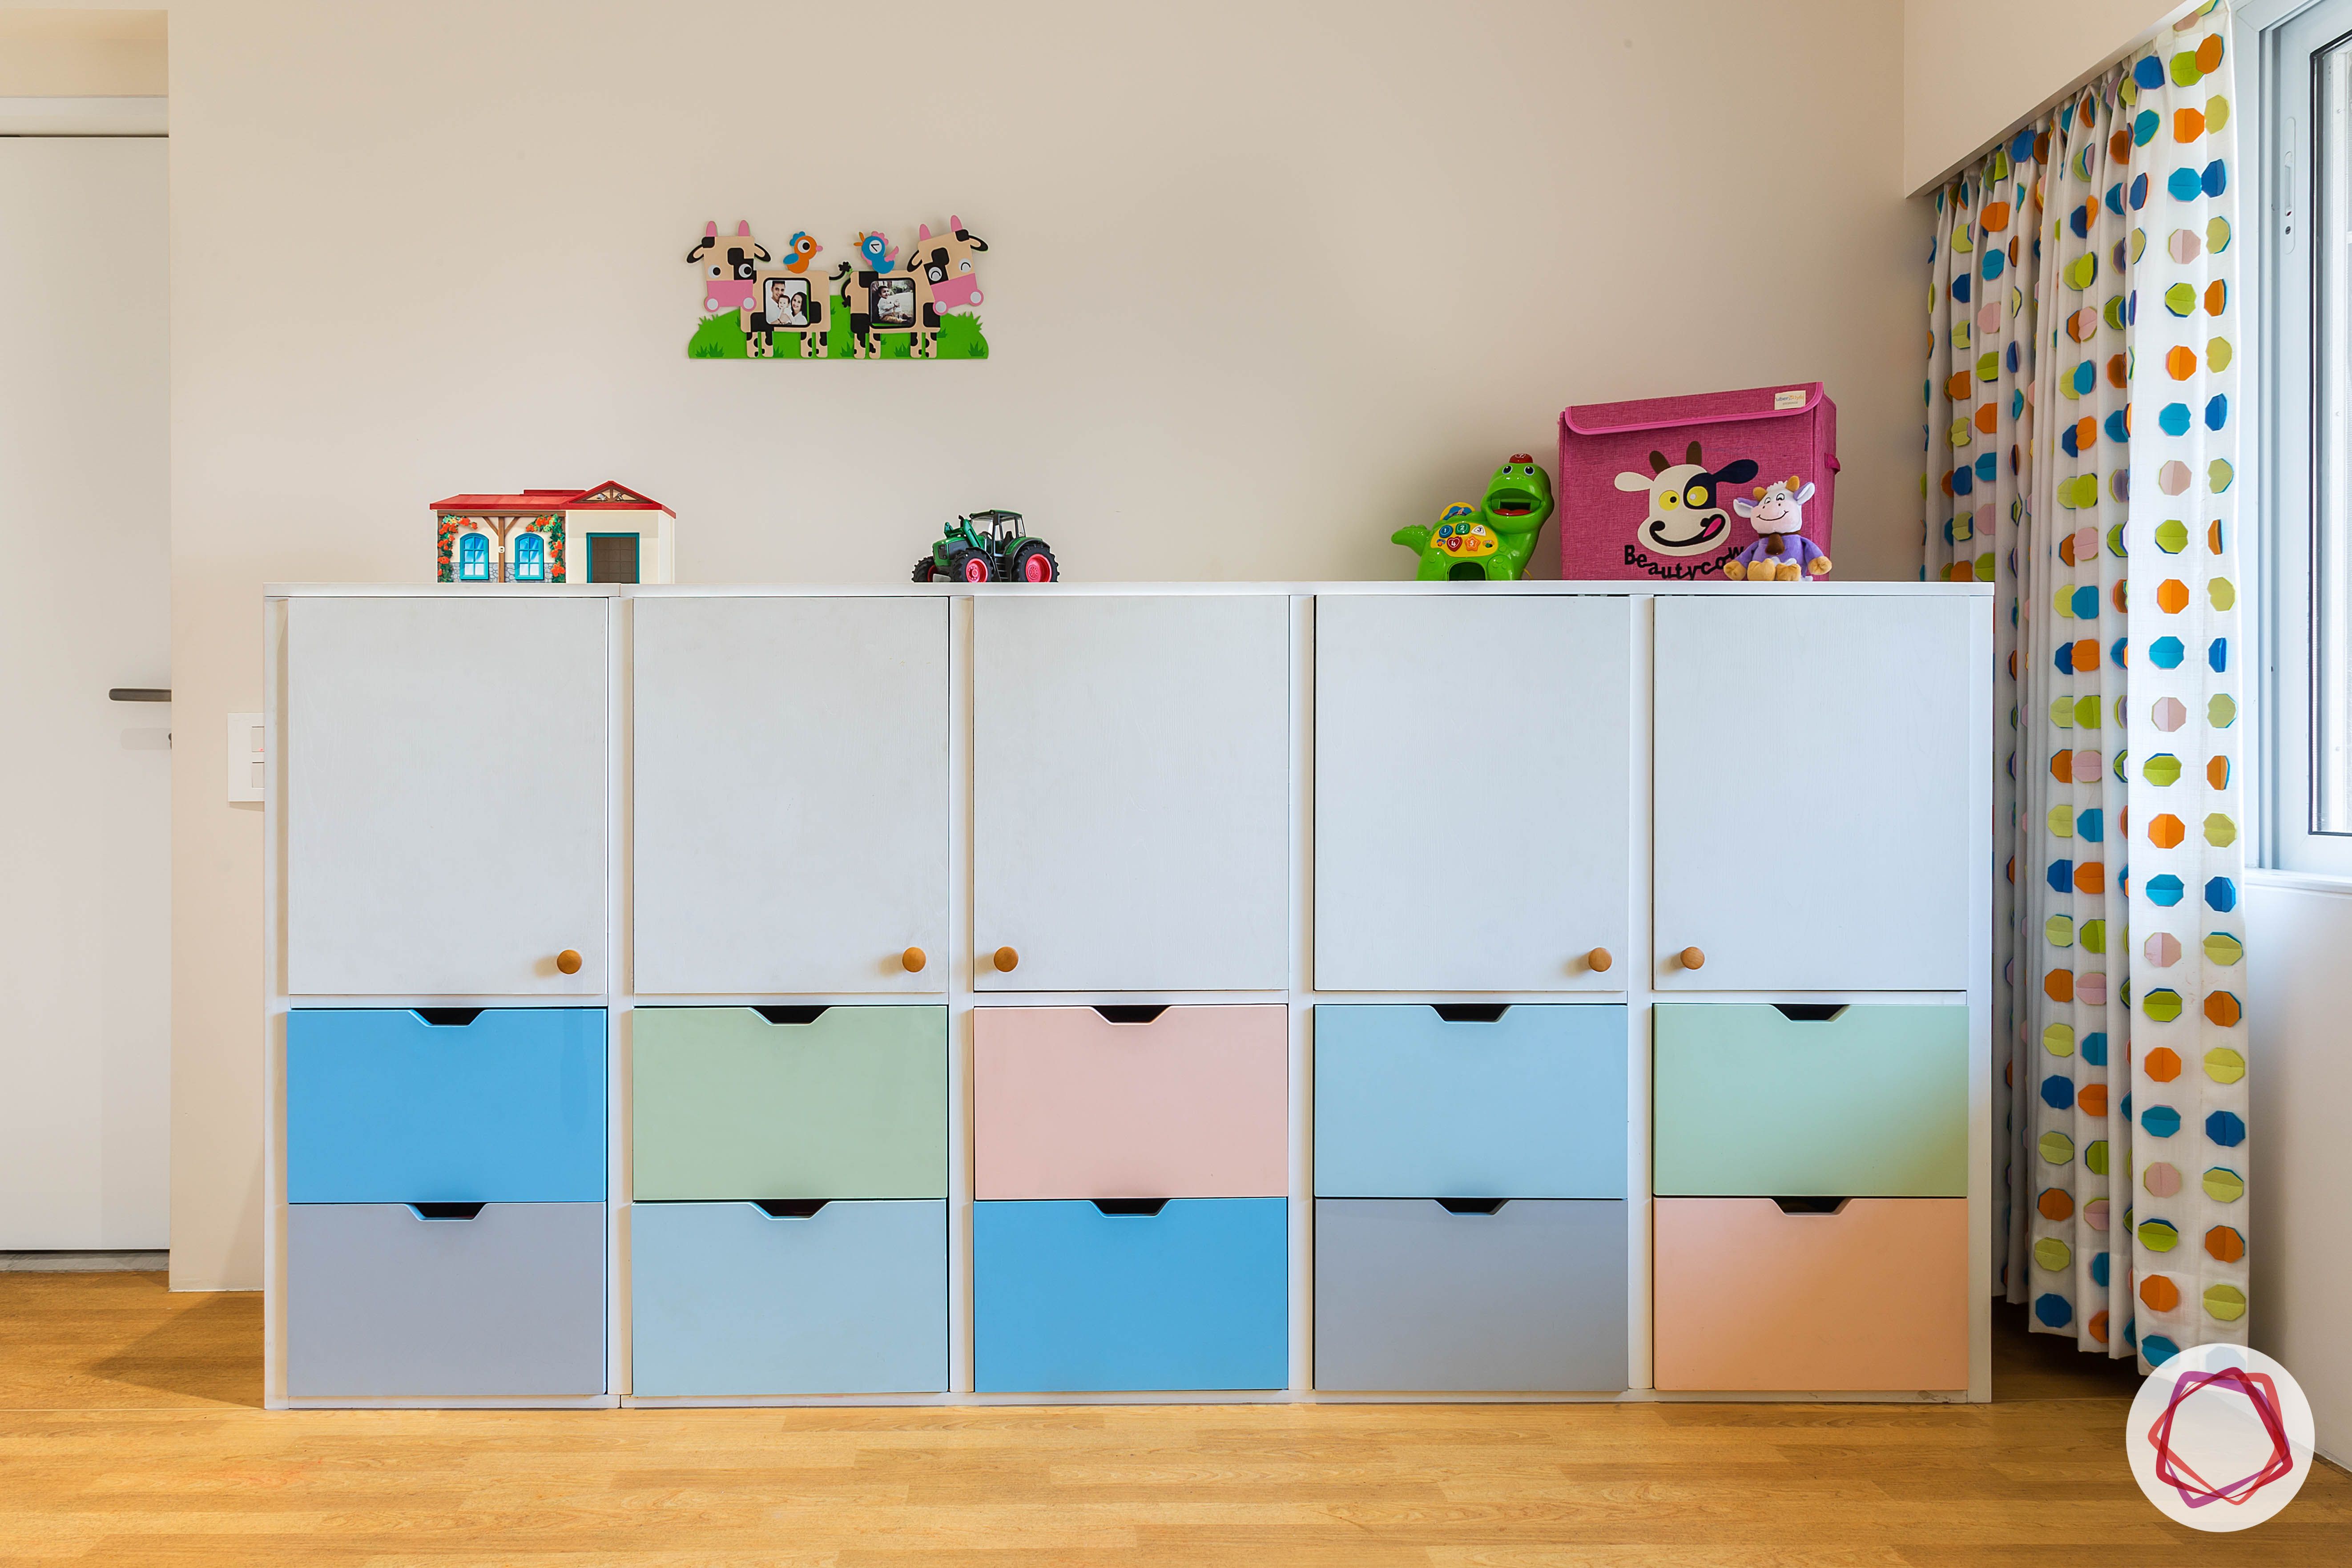 4bhk house plan-kids playroom ideas-kids playroom furniture-kids playroom designs-kids nursery designs-toy cabinet designs